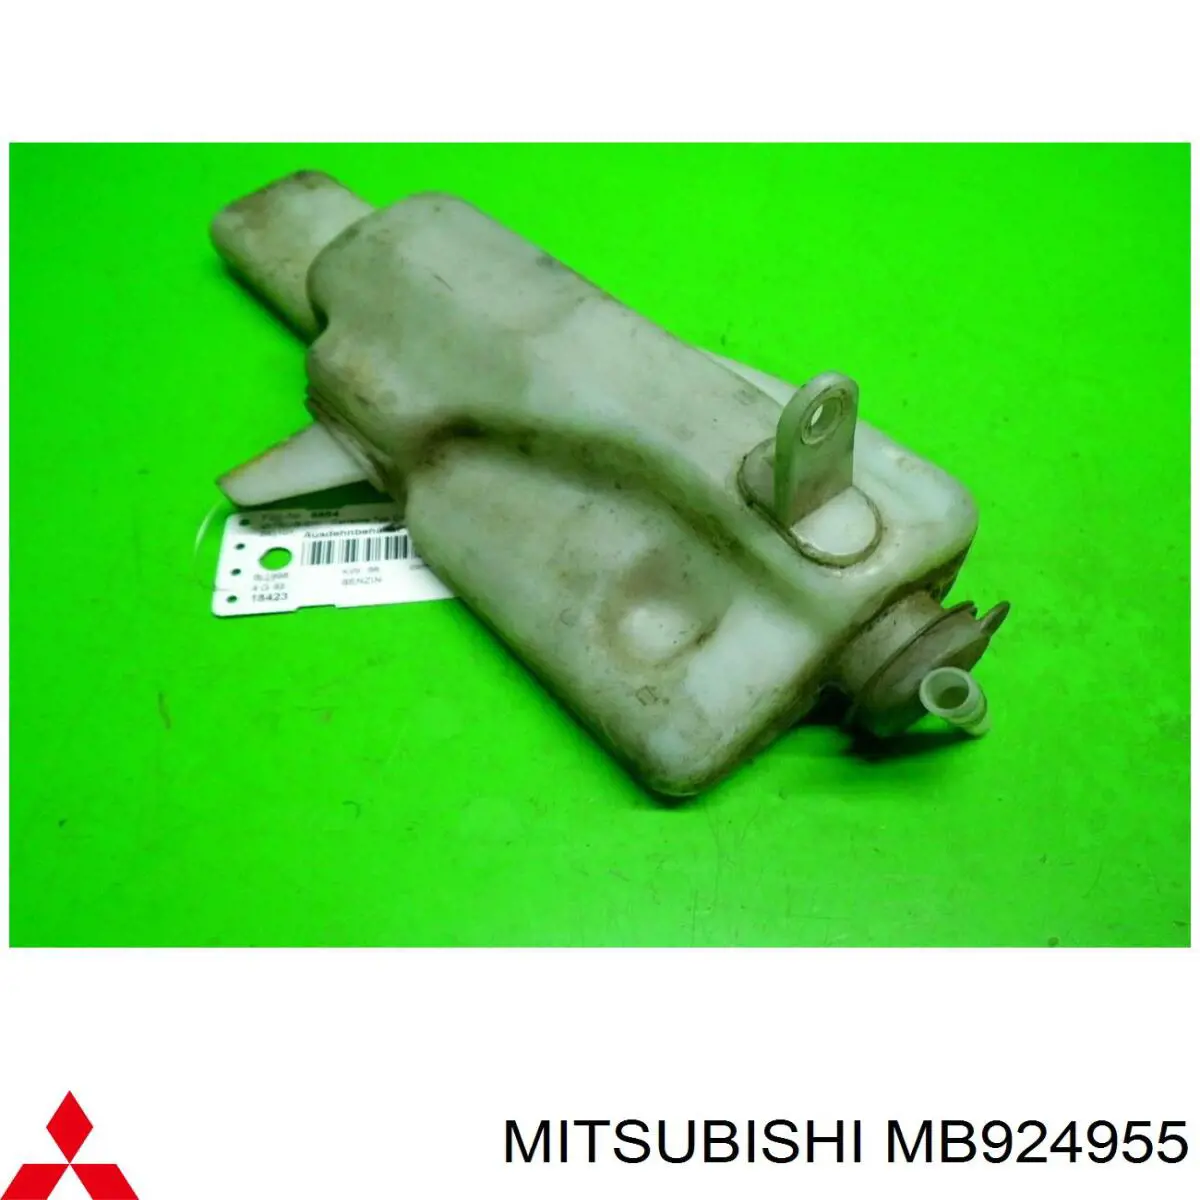 MB924955 Mitsubishi vaso de expansión